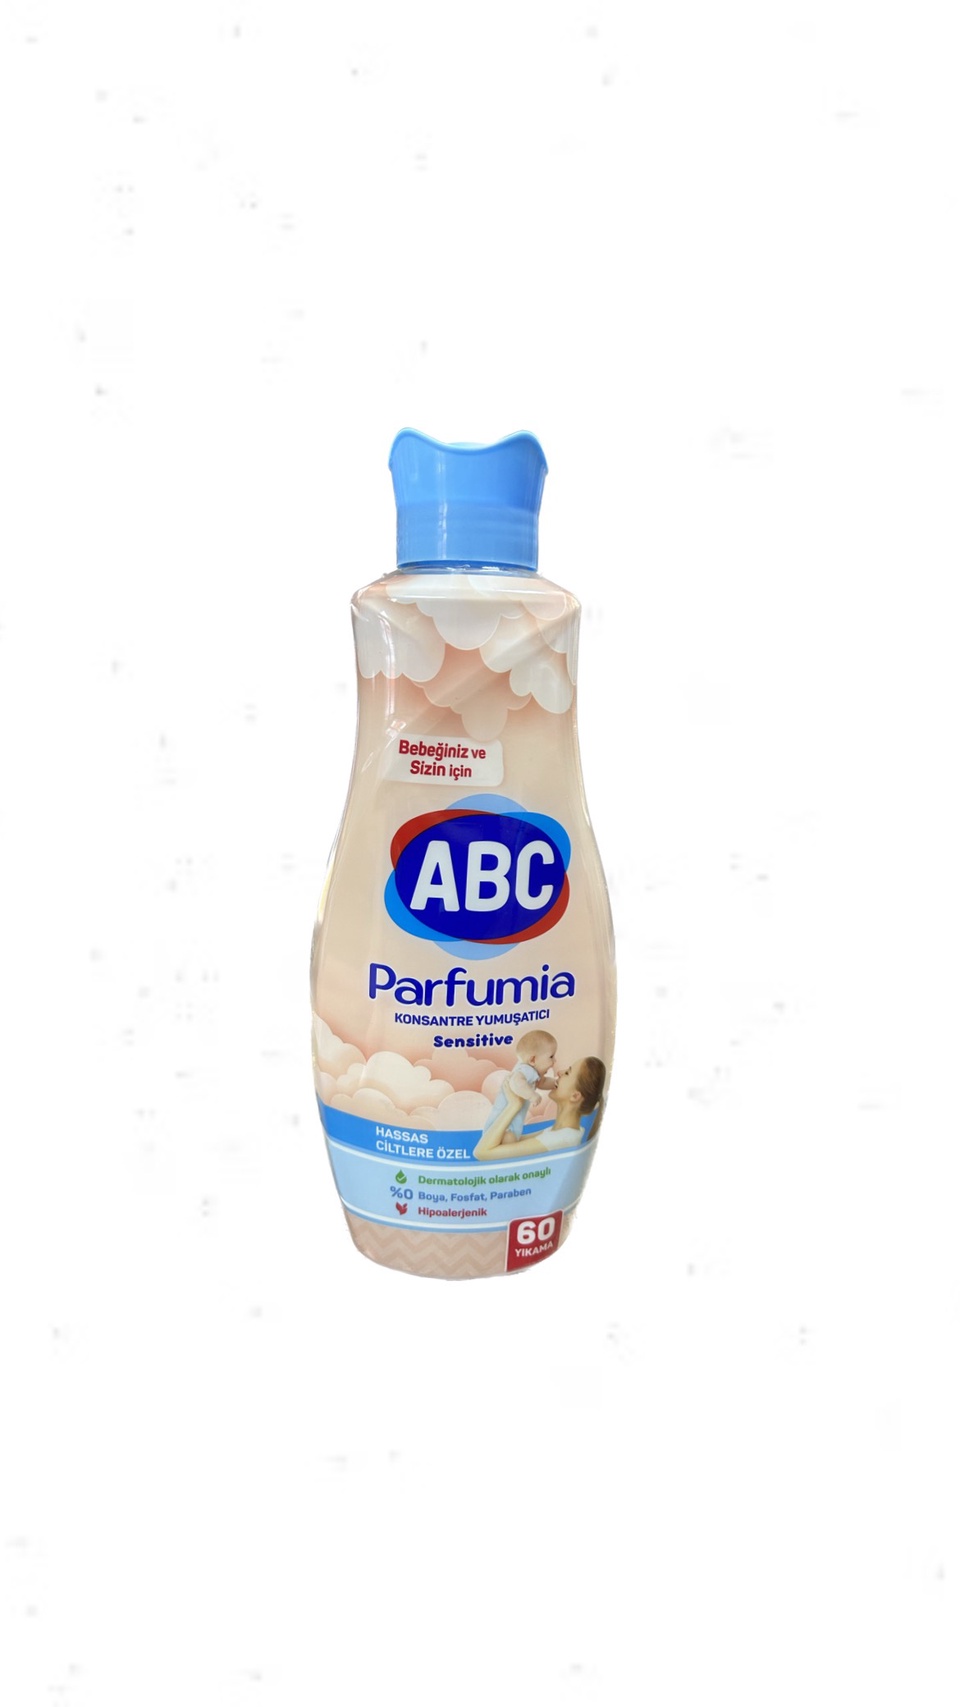 Кондиционер для белья ABC Parfumia Sensitive 1440 мл. - 400 ₽, заказать онлайн.